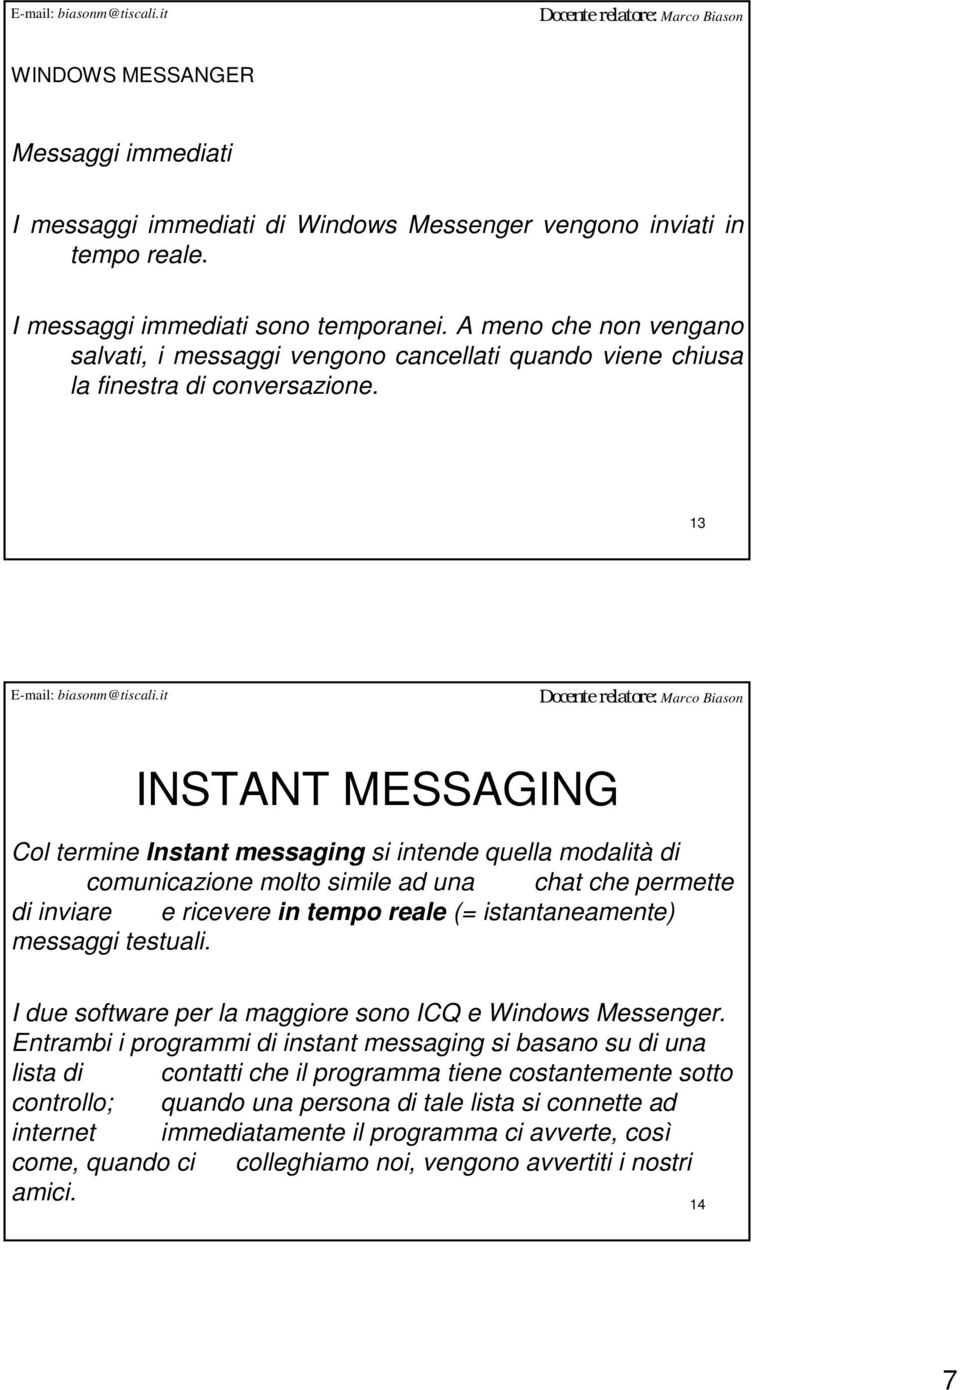 13 INSTANT MESSAGING Col termine Instant messaging si intende quella modalità di comunicazione molto simile ad una chat che permette di inviare e ricevere in tempo reale (= istantaneamente) messaggi